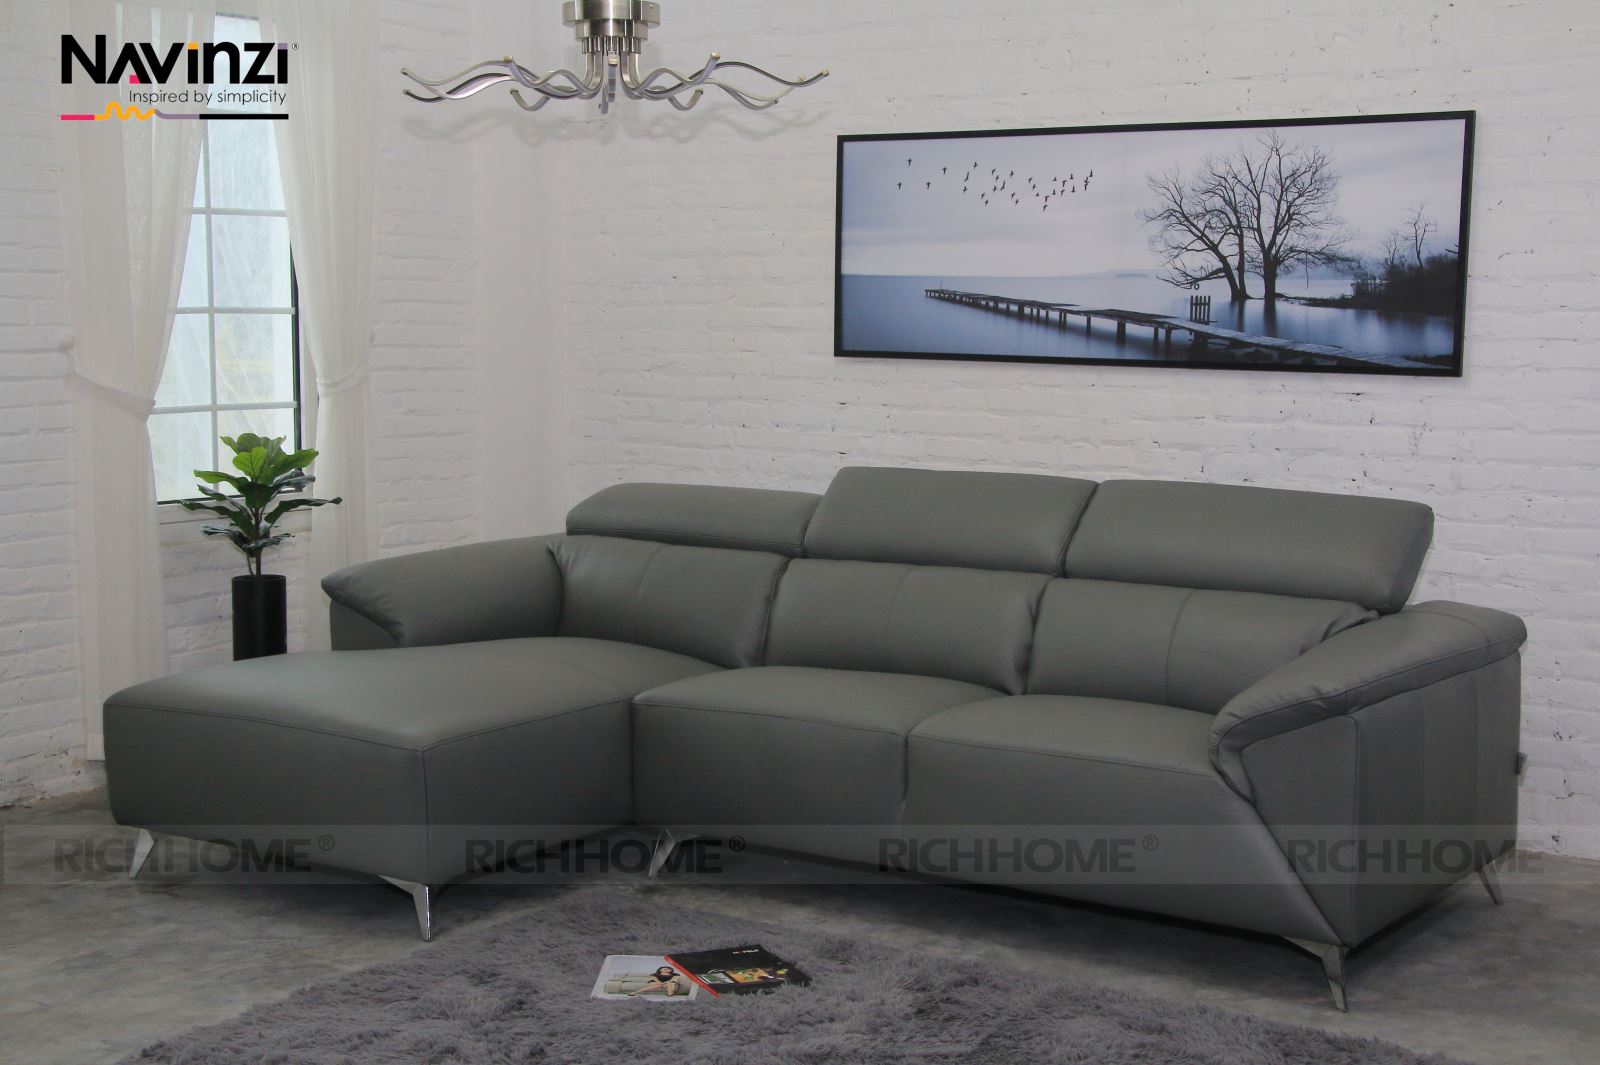 Ghế sofa nhập khẩu chất lượng nhất tại Hà Nội - Ảnh 3